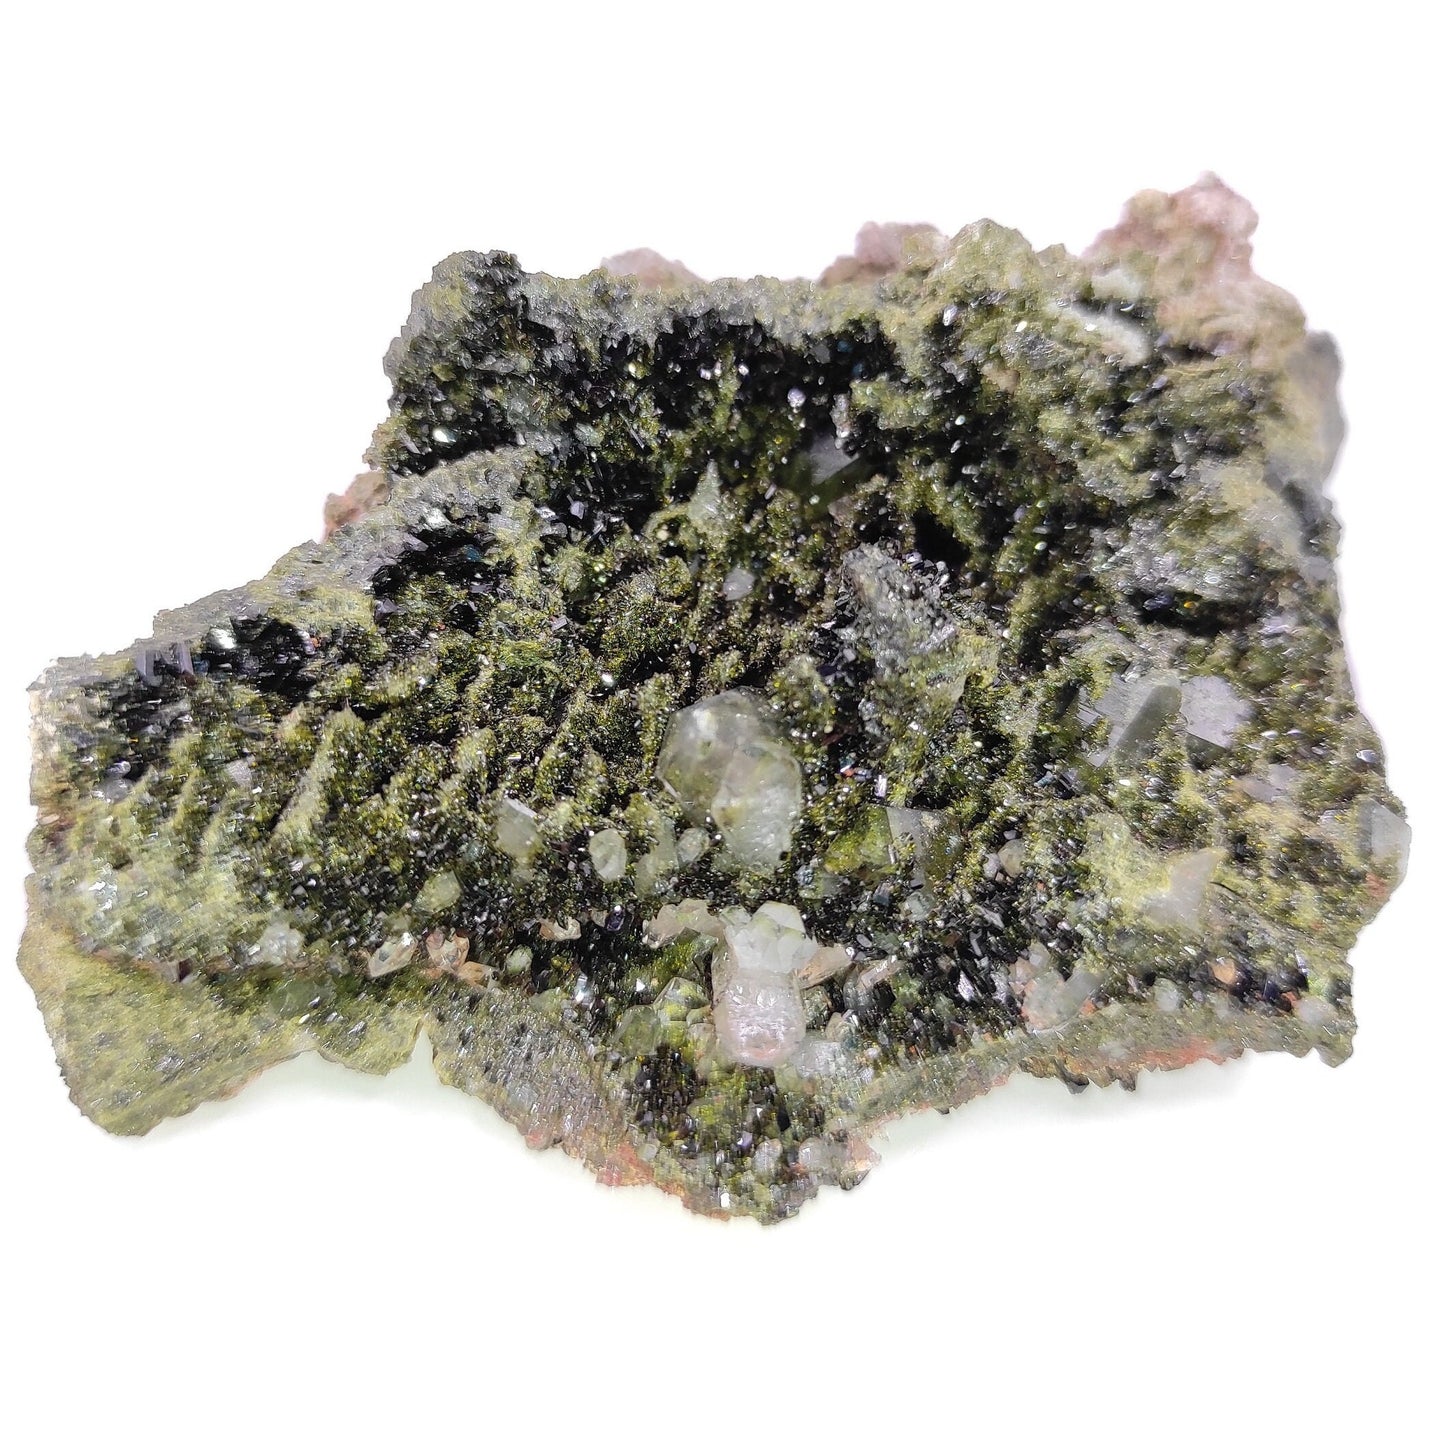 135g Sparkly Epidote & Forest Quartz - Hakkari, Turkey - Epidote with Clear Quartz - Forest Fairy Quartz - Natural Minerals - Rare Find